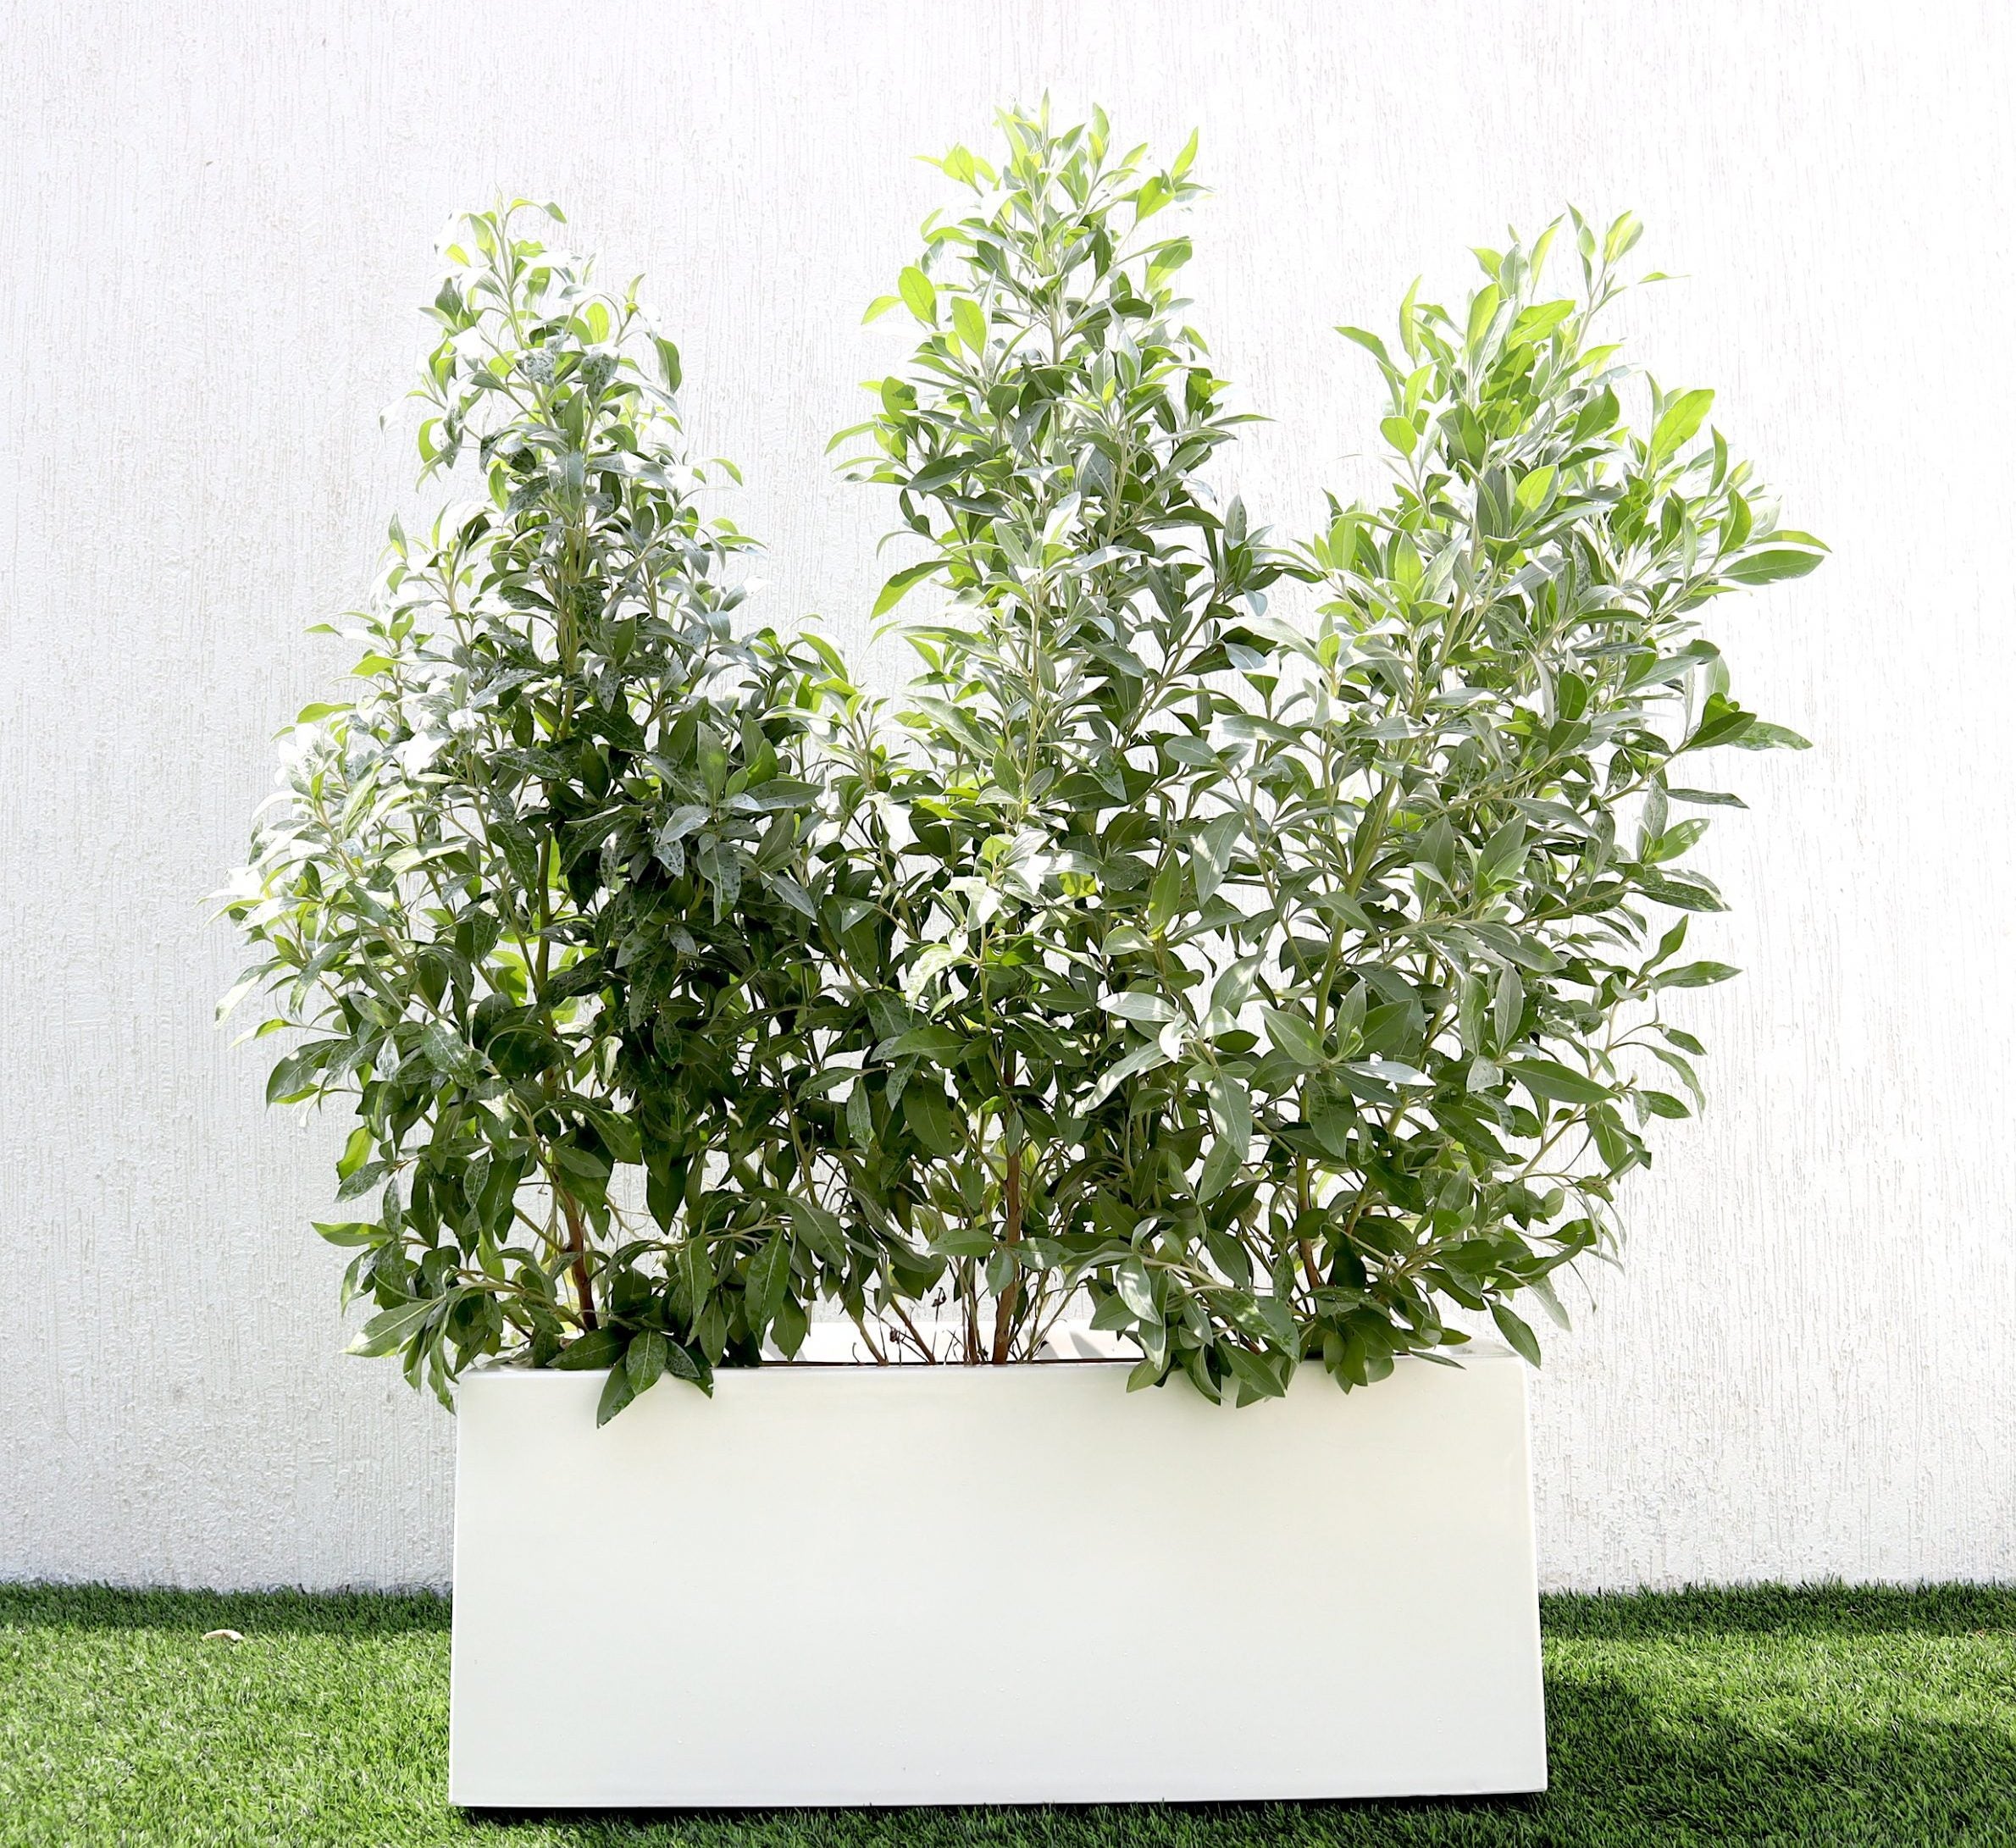 Conocarpus erectus Sericeus “Silver Damas” 1.0-1.2m